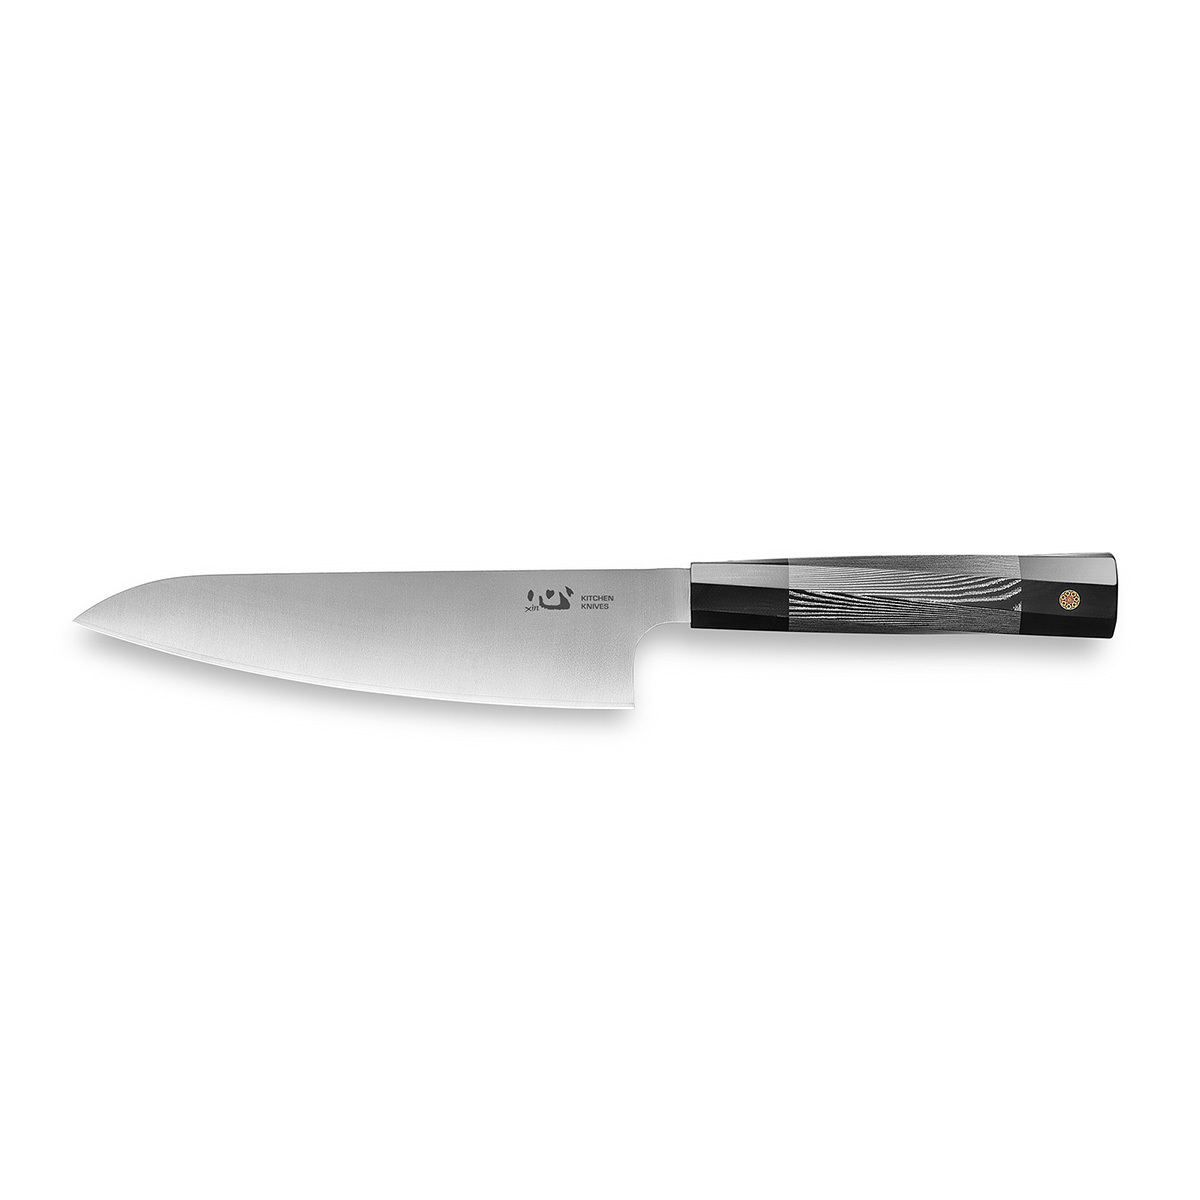 Нож кухонный Xin Cutlery Utility knife XC103 175мм, сталь 304Cu, рукоять G10, белый/черный